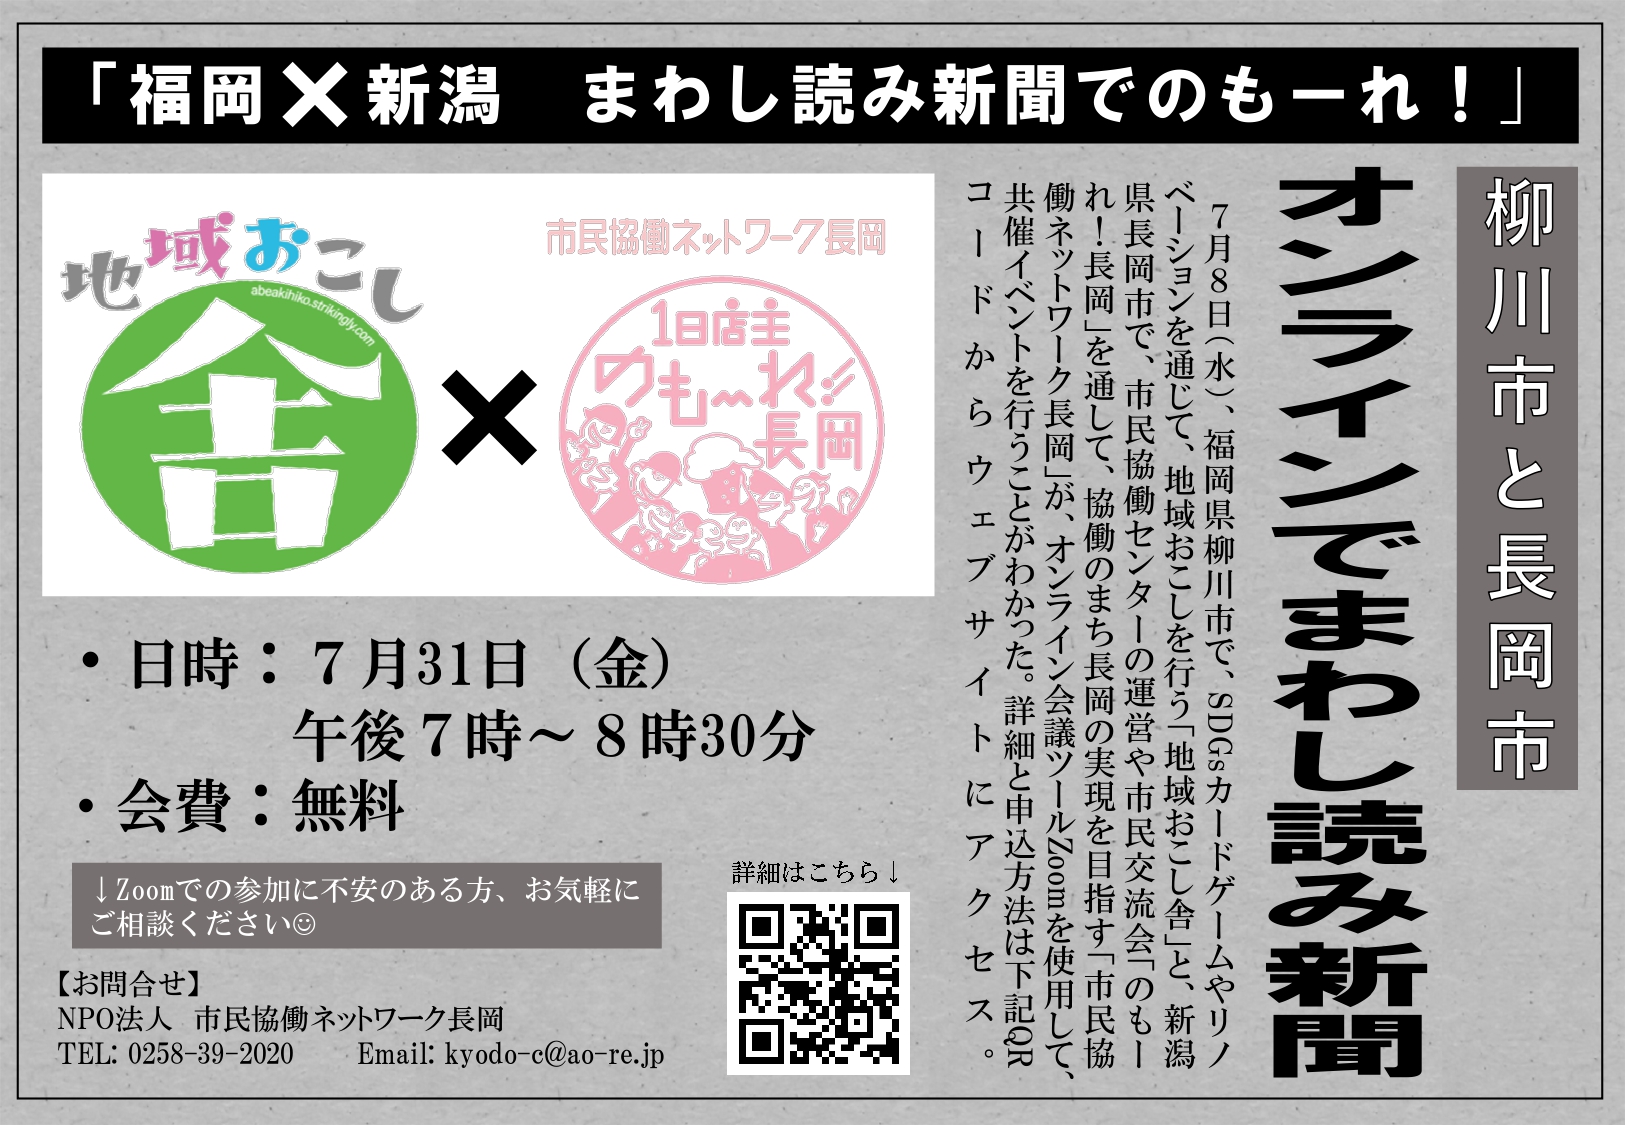 福岡 新潟 まわし読み新聞でのもーれ ながおか市民協働センターウェブサイト コライト